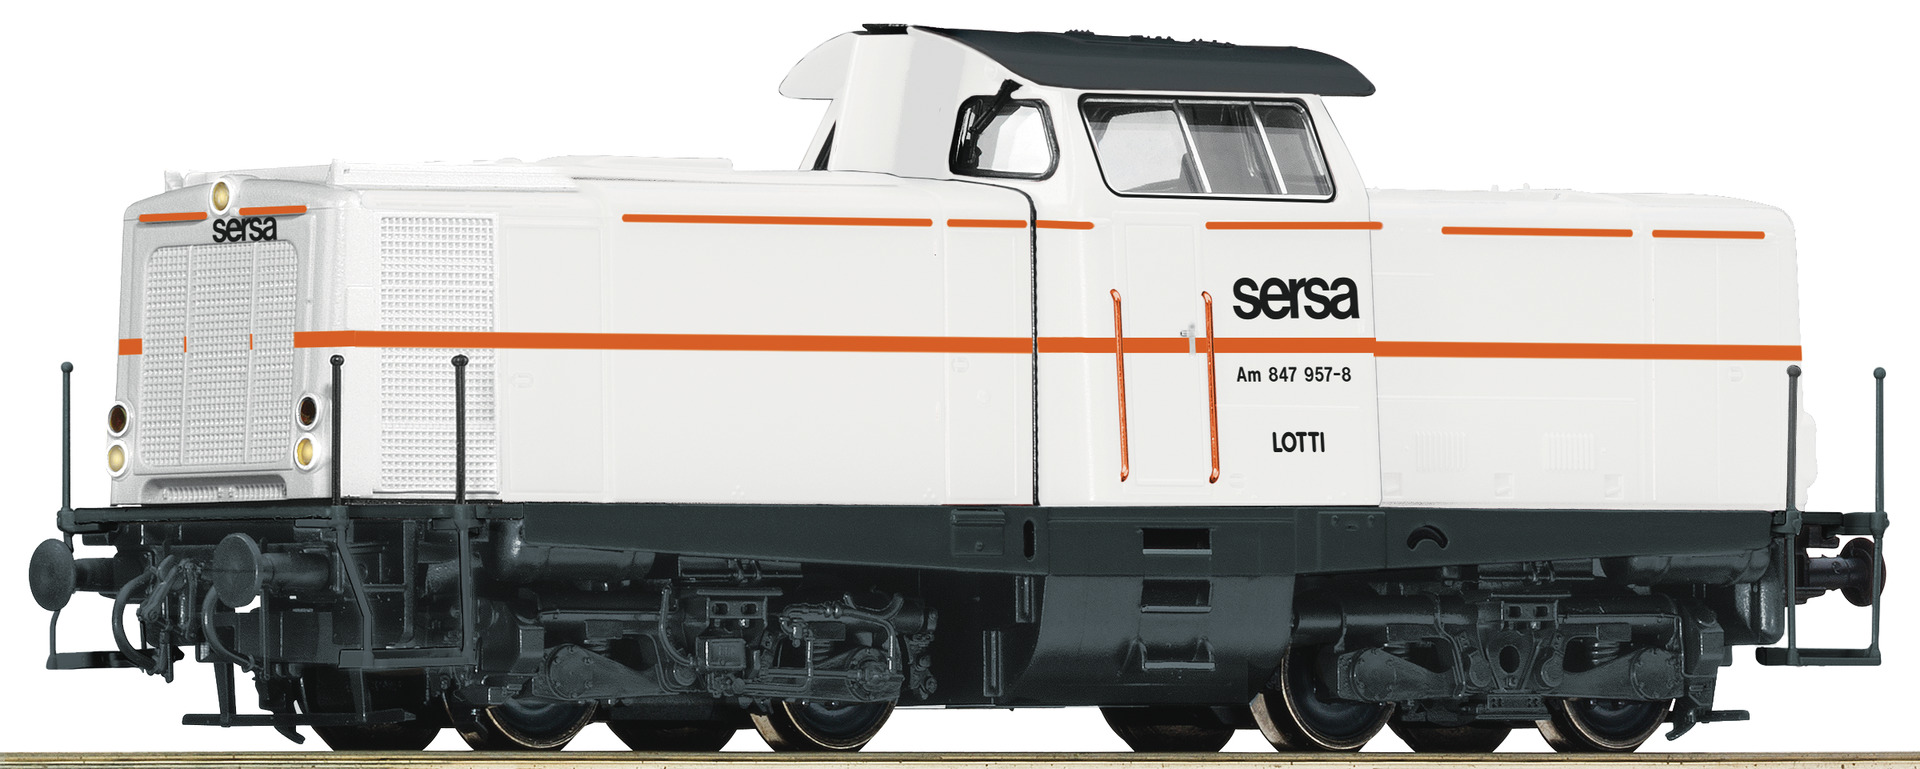 Roco 58566 Diesellokomotive Am 847 957-8 Diesellok Am 847 Sersa AC-Leo